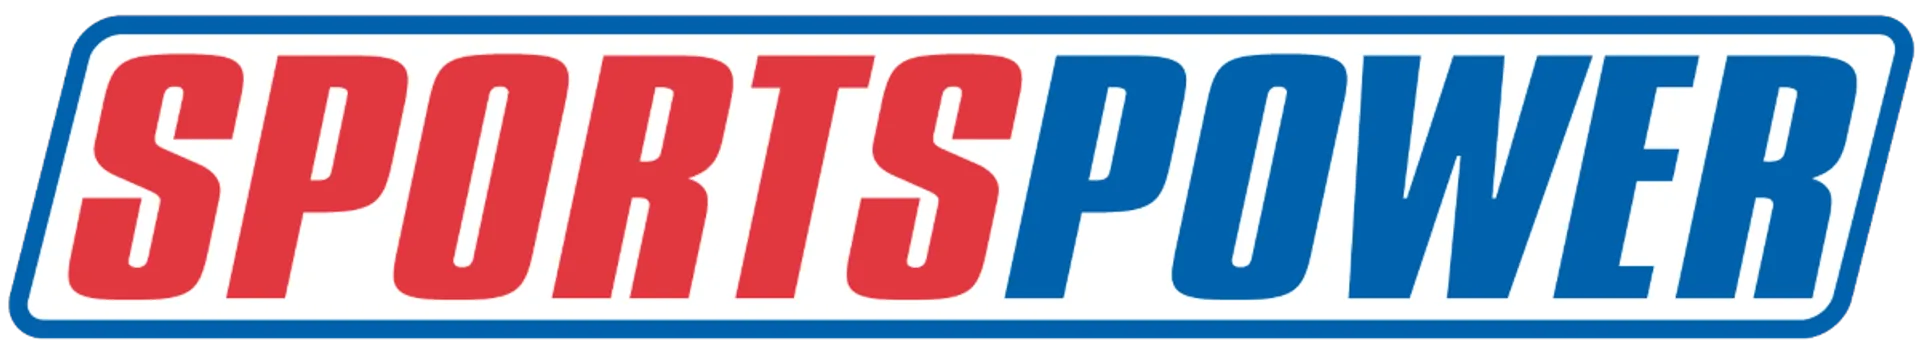 SPORTSPOWER logo of current flyer